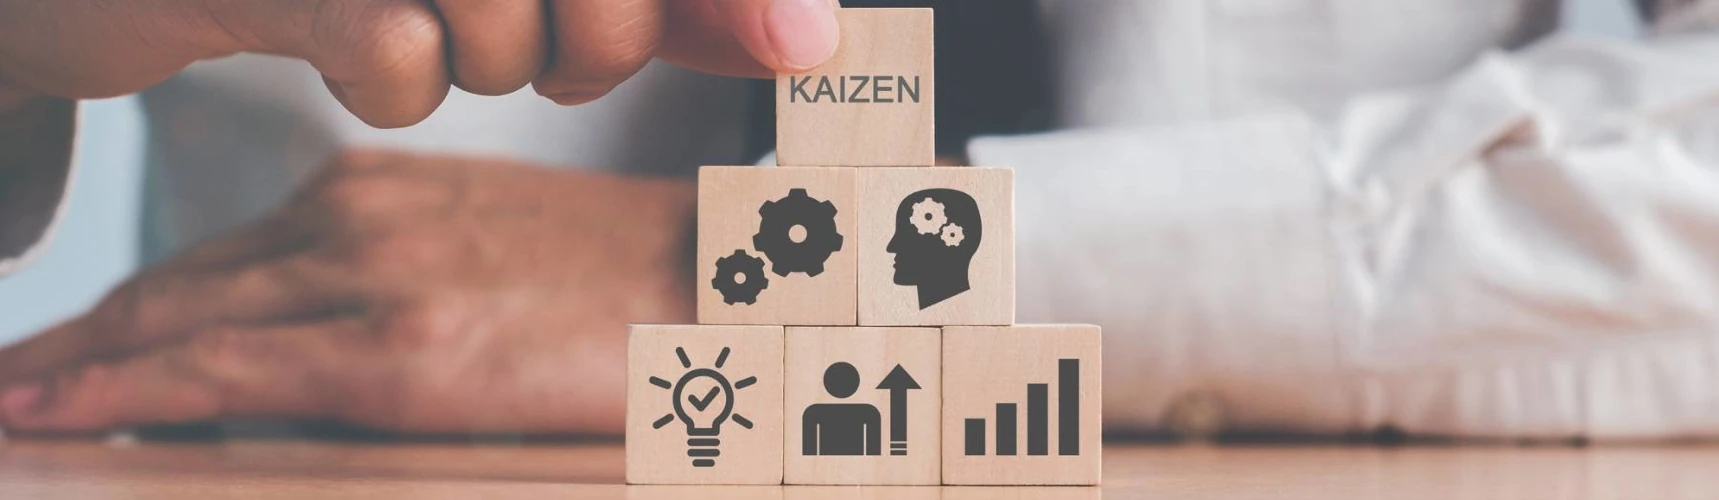 Metodologia Kaizen: como aplicar na logística?